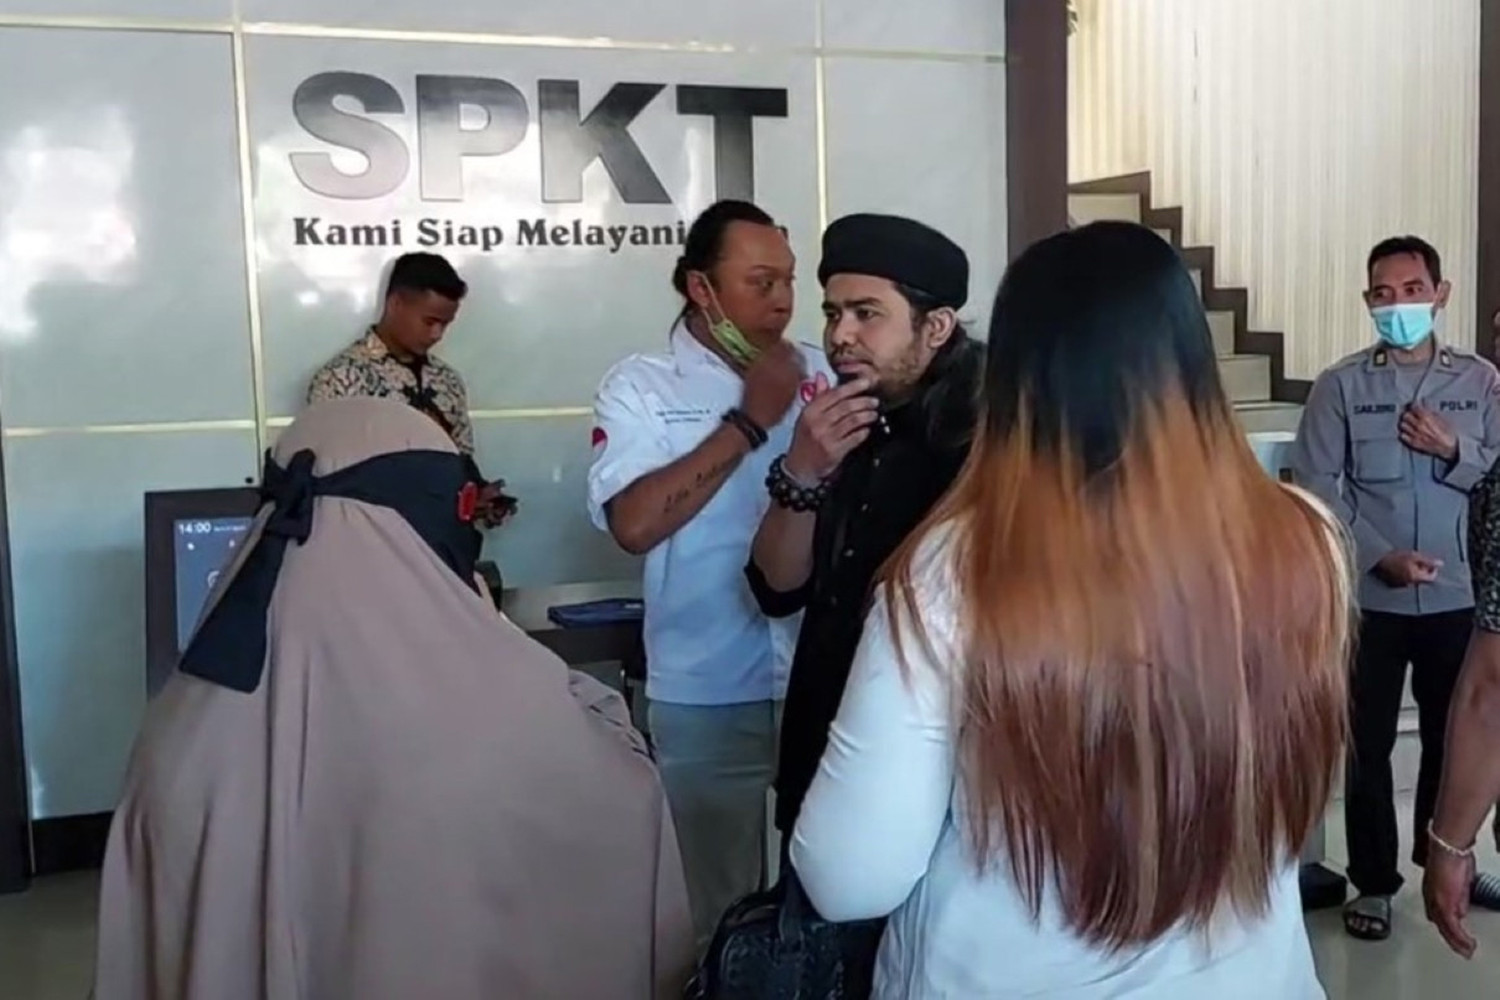 Pengobatan Gus Samsudin Disebut Tipu-tipu, Pengacara Ungkap Pasiennya Ada dari Malaysia Loh - JPNN.com Sultra